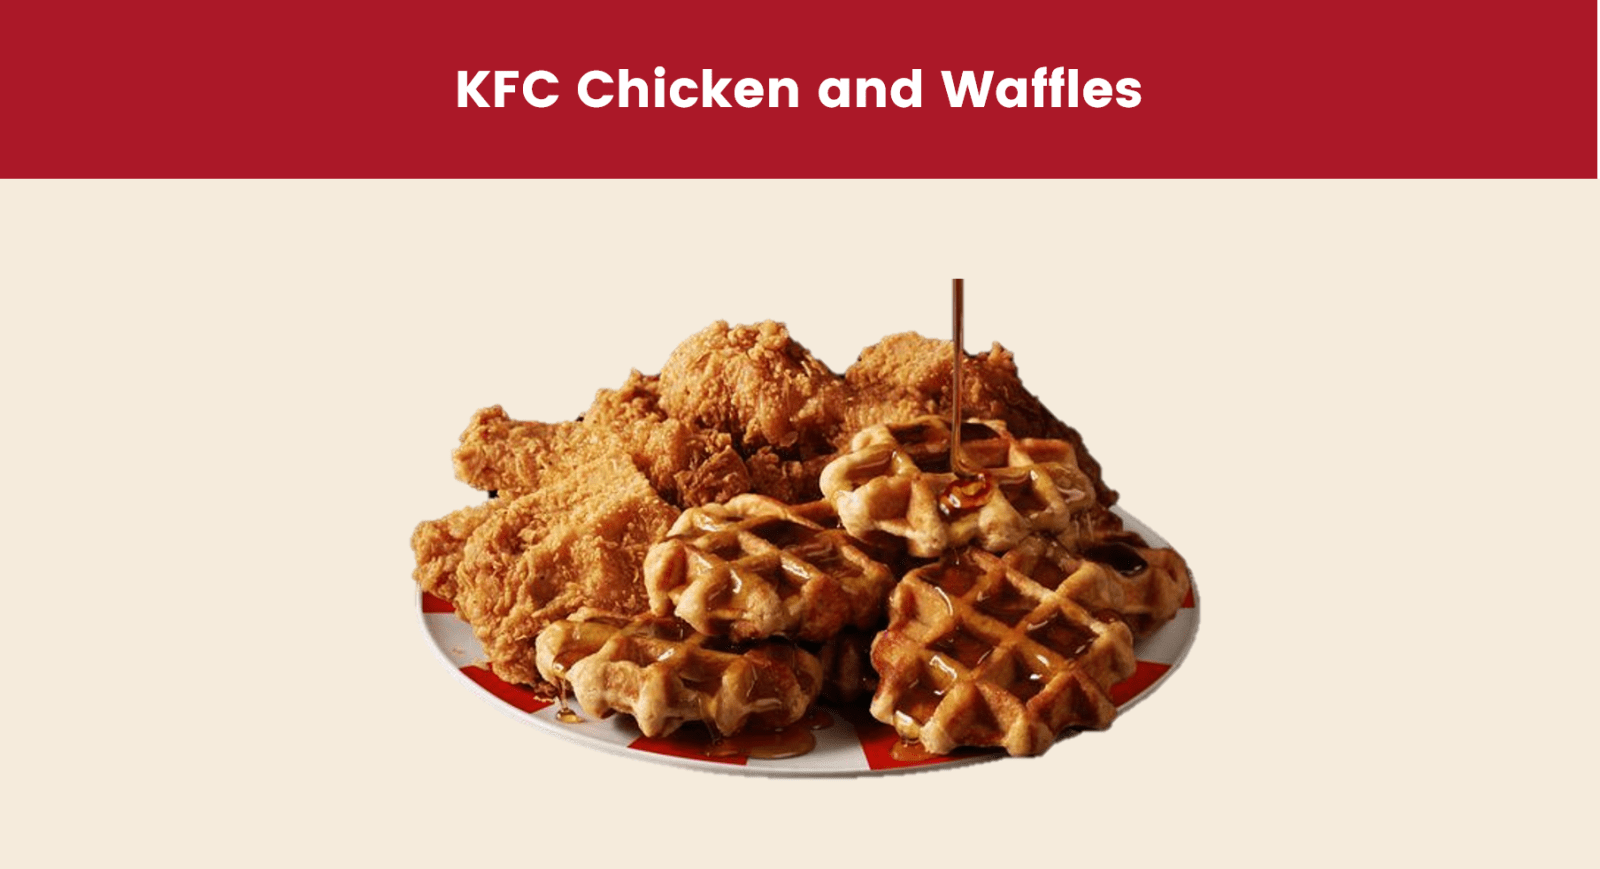 KFC Chicken and Waffles
